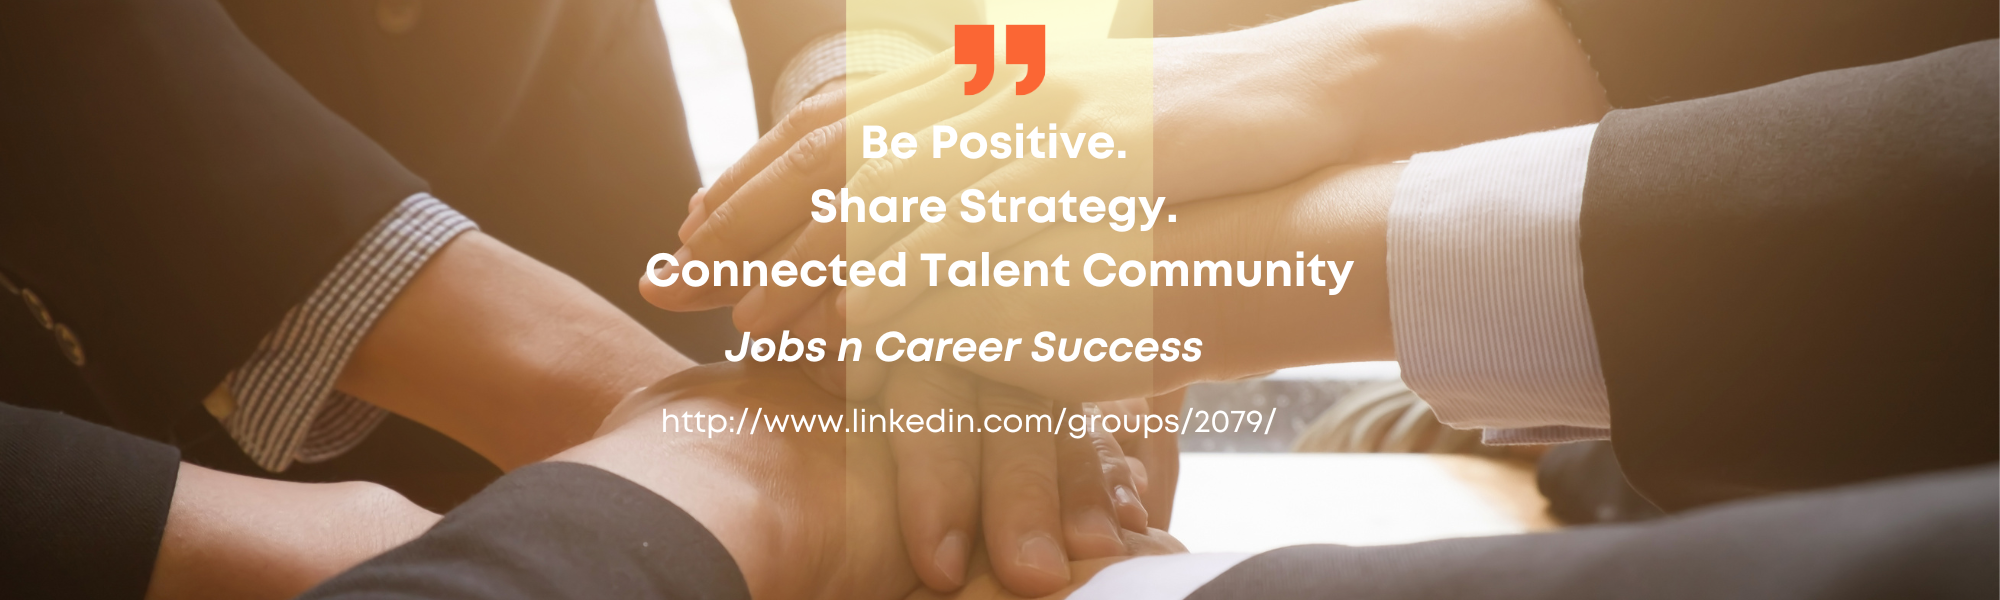 Jobs n Career Success- eNews